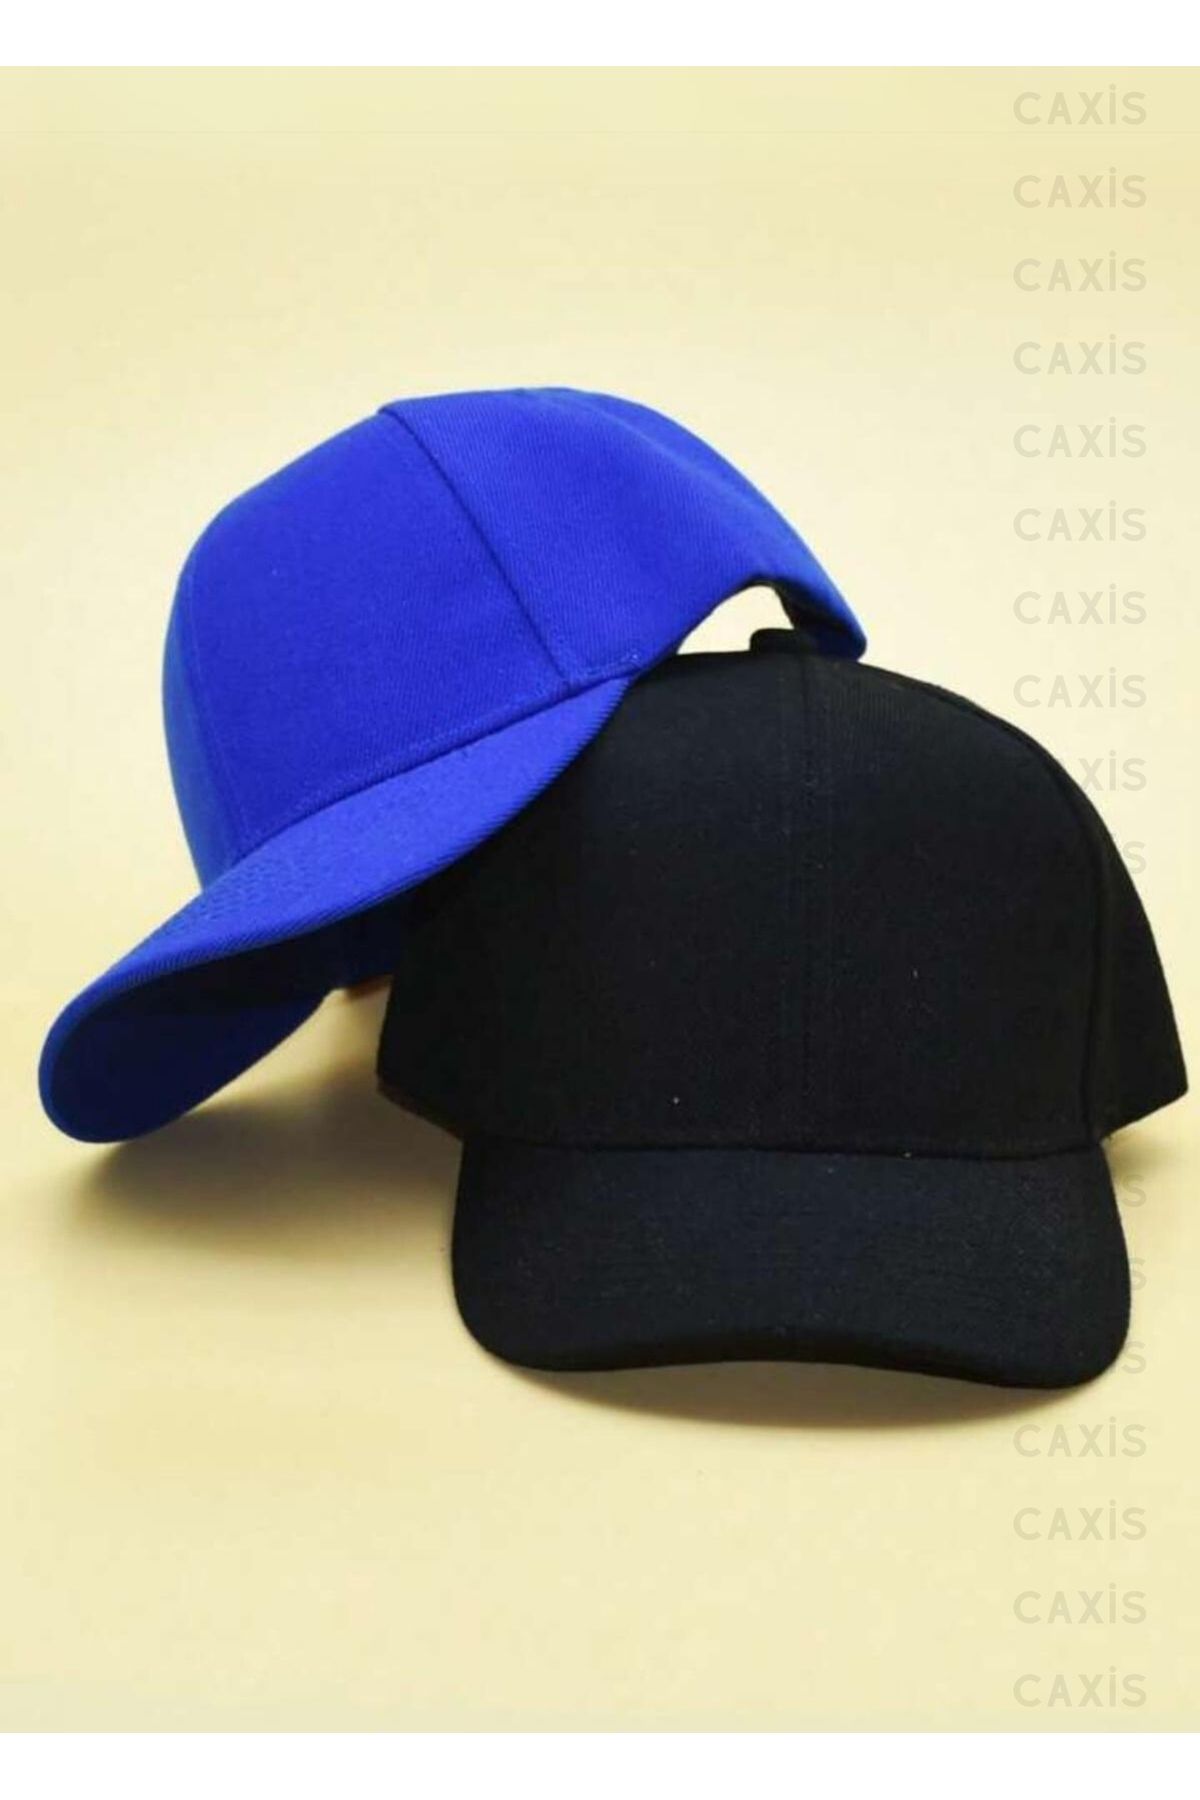 caxis Spor Şapka Unisex 2 Adet Arkası Cırtlı Ayarlanabilir